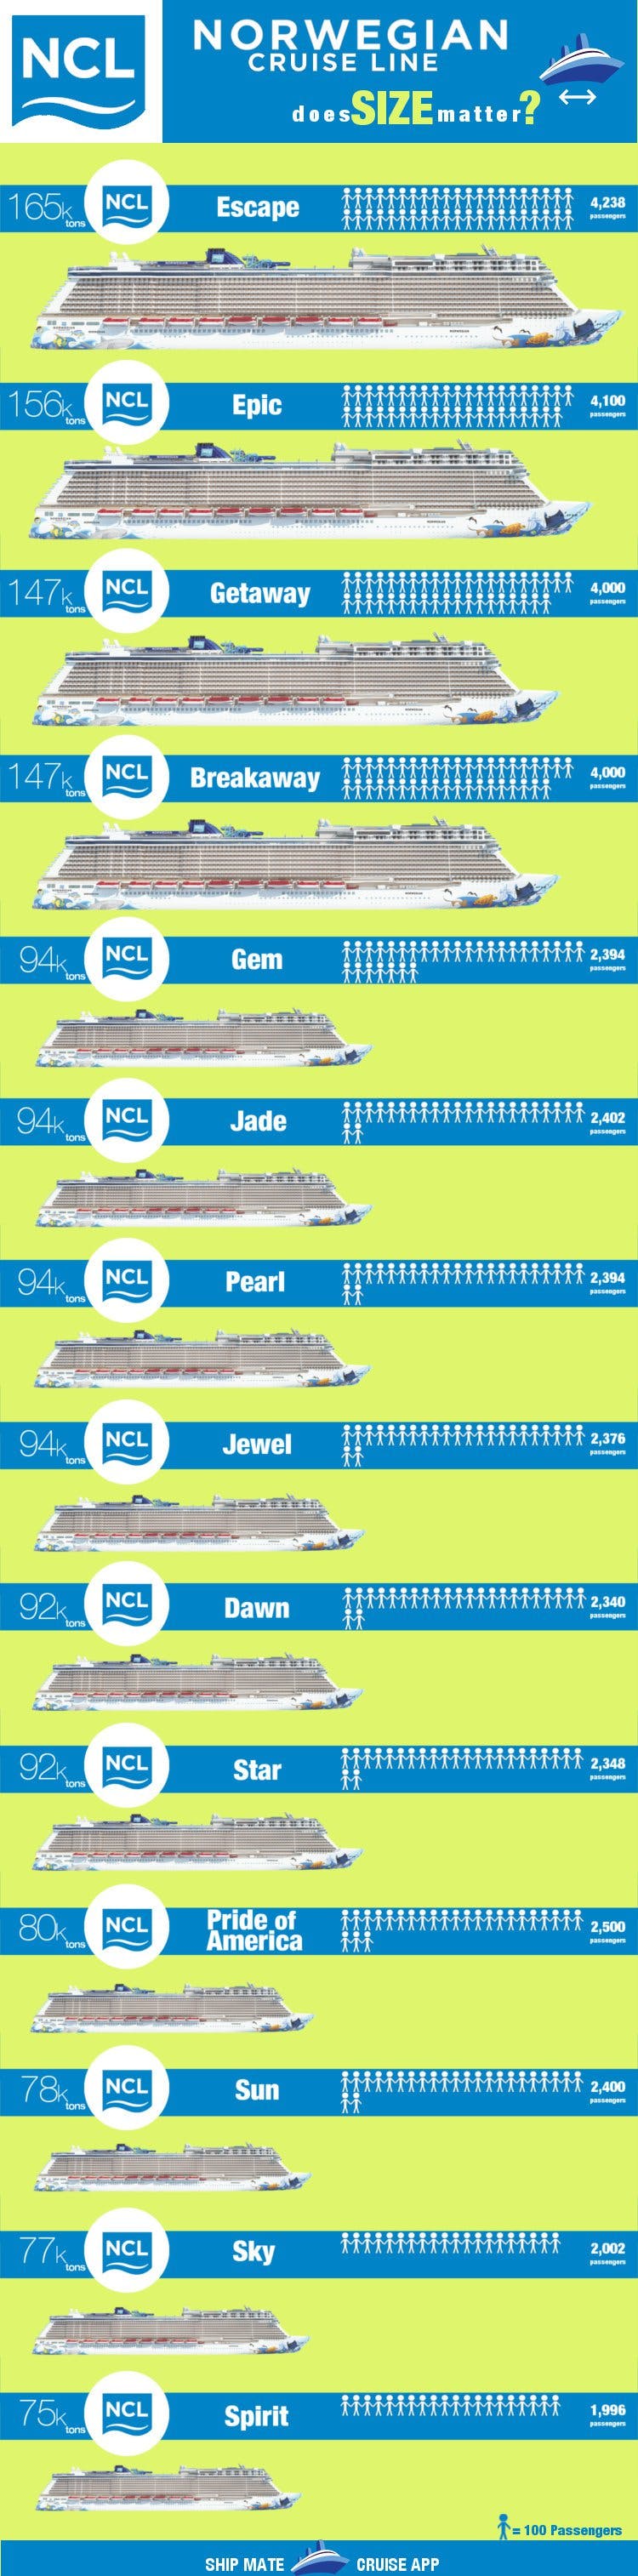 norwegian cruise line ships by class